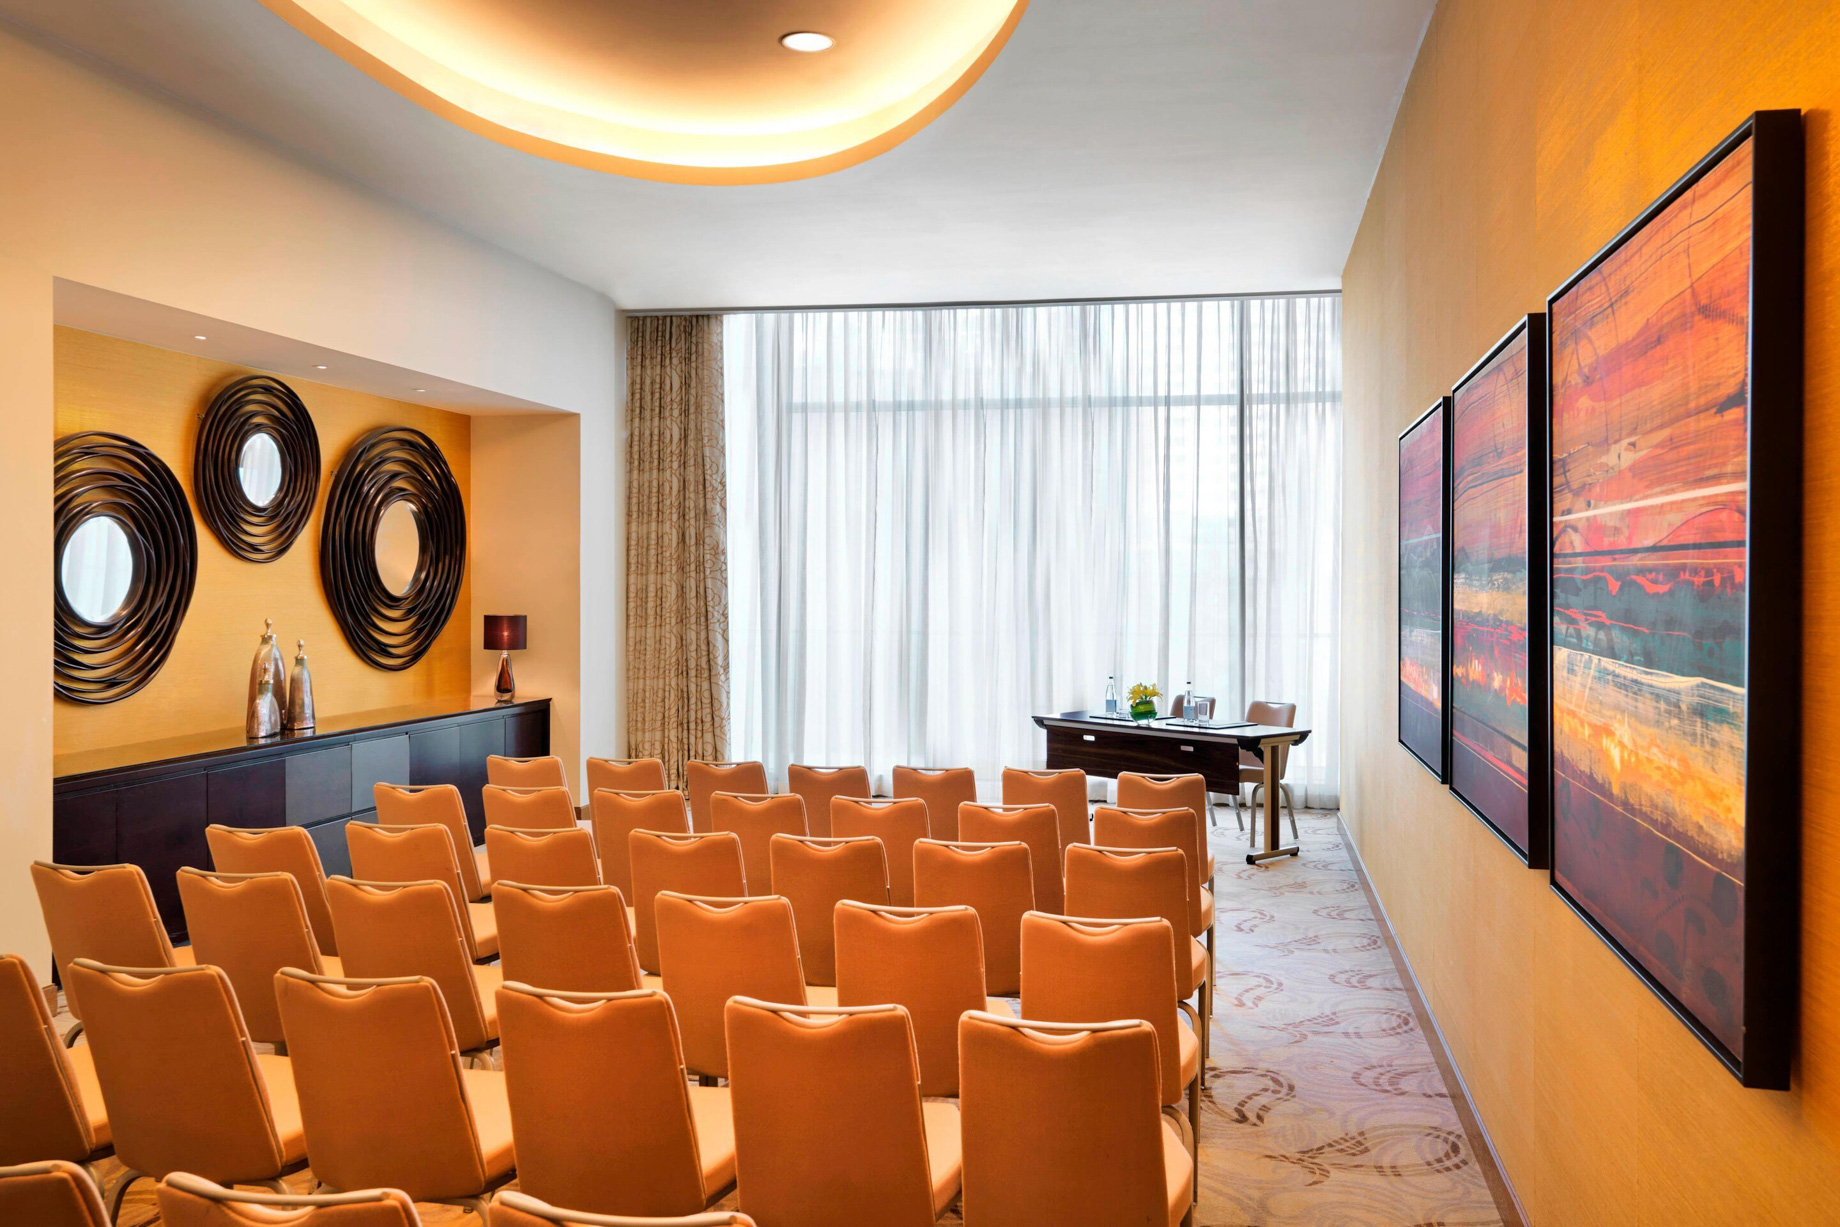 JW Marriott Absheron Baku Hotel – Baku, Azerbaijan – Gobustan Meeting Room Theatre Setup